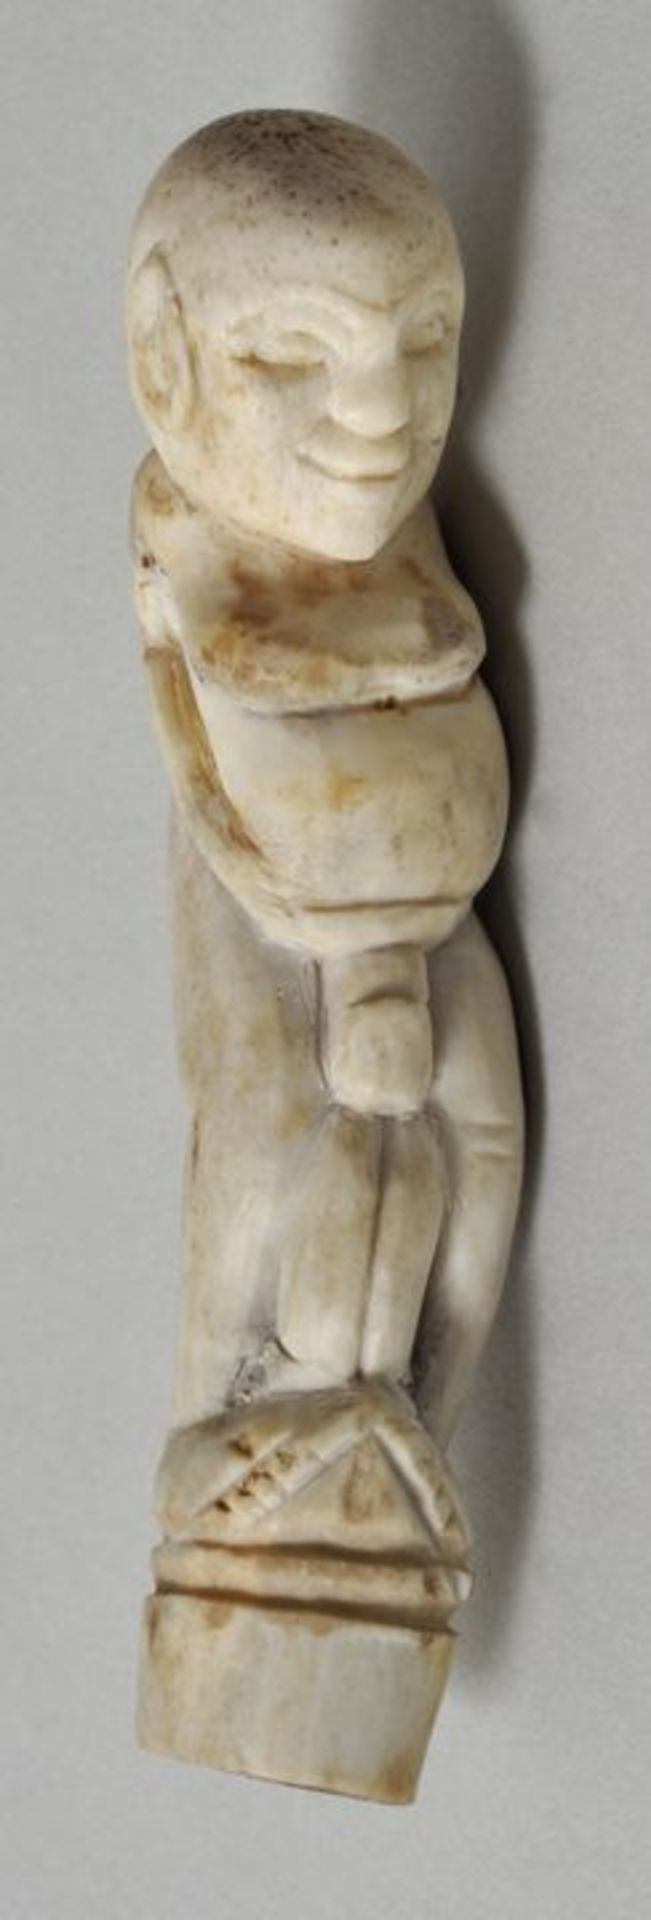 Stockgriff, Hawaii (?)Erotische Schnitzerei Bein. Weibliche Figur mit Phallus. L. 10 cm- - -25.